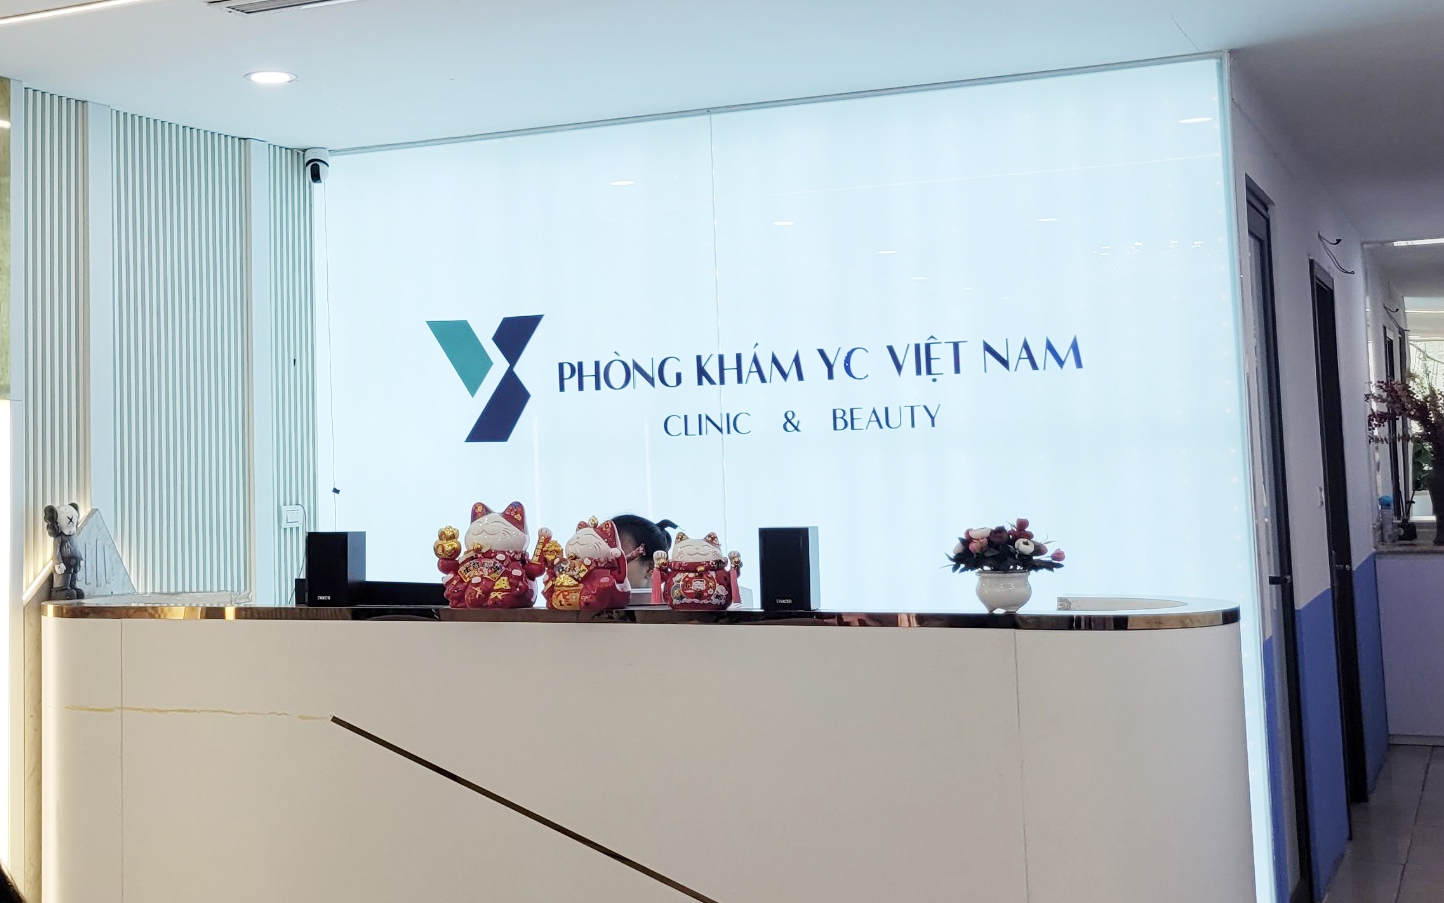 Thảm họa làm đẹp khi đến nhầm chỗ (bài 4): Thu 260 triệu đồng từ khách hàng, "Phòng khám" YC Việt Nam thừa nhận sai sót trong quá trình khám, điều trị da